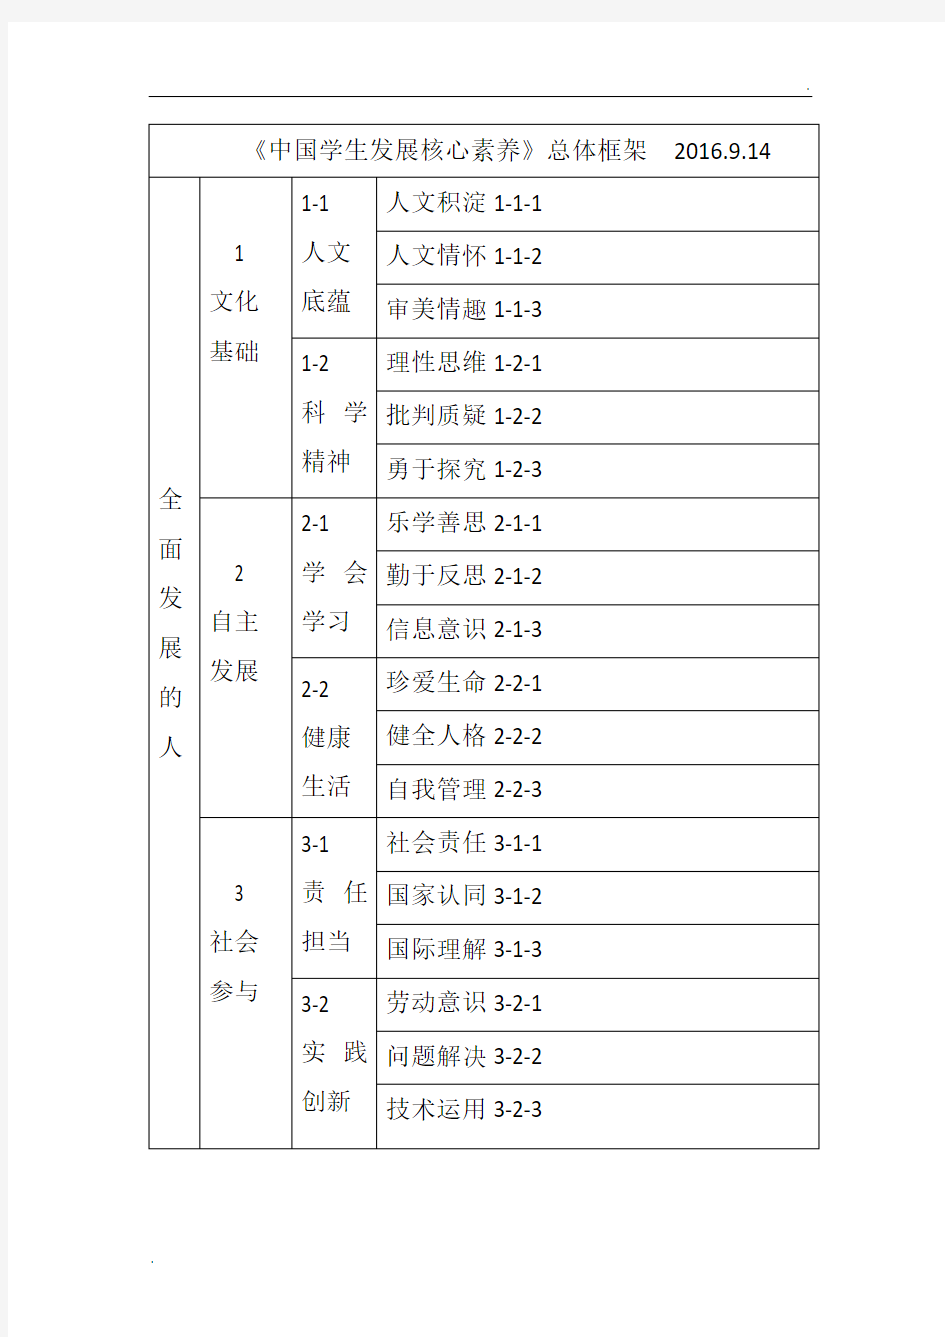 《中国学生发展核心素养》总体框架结构图